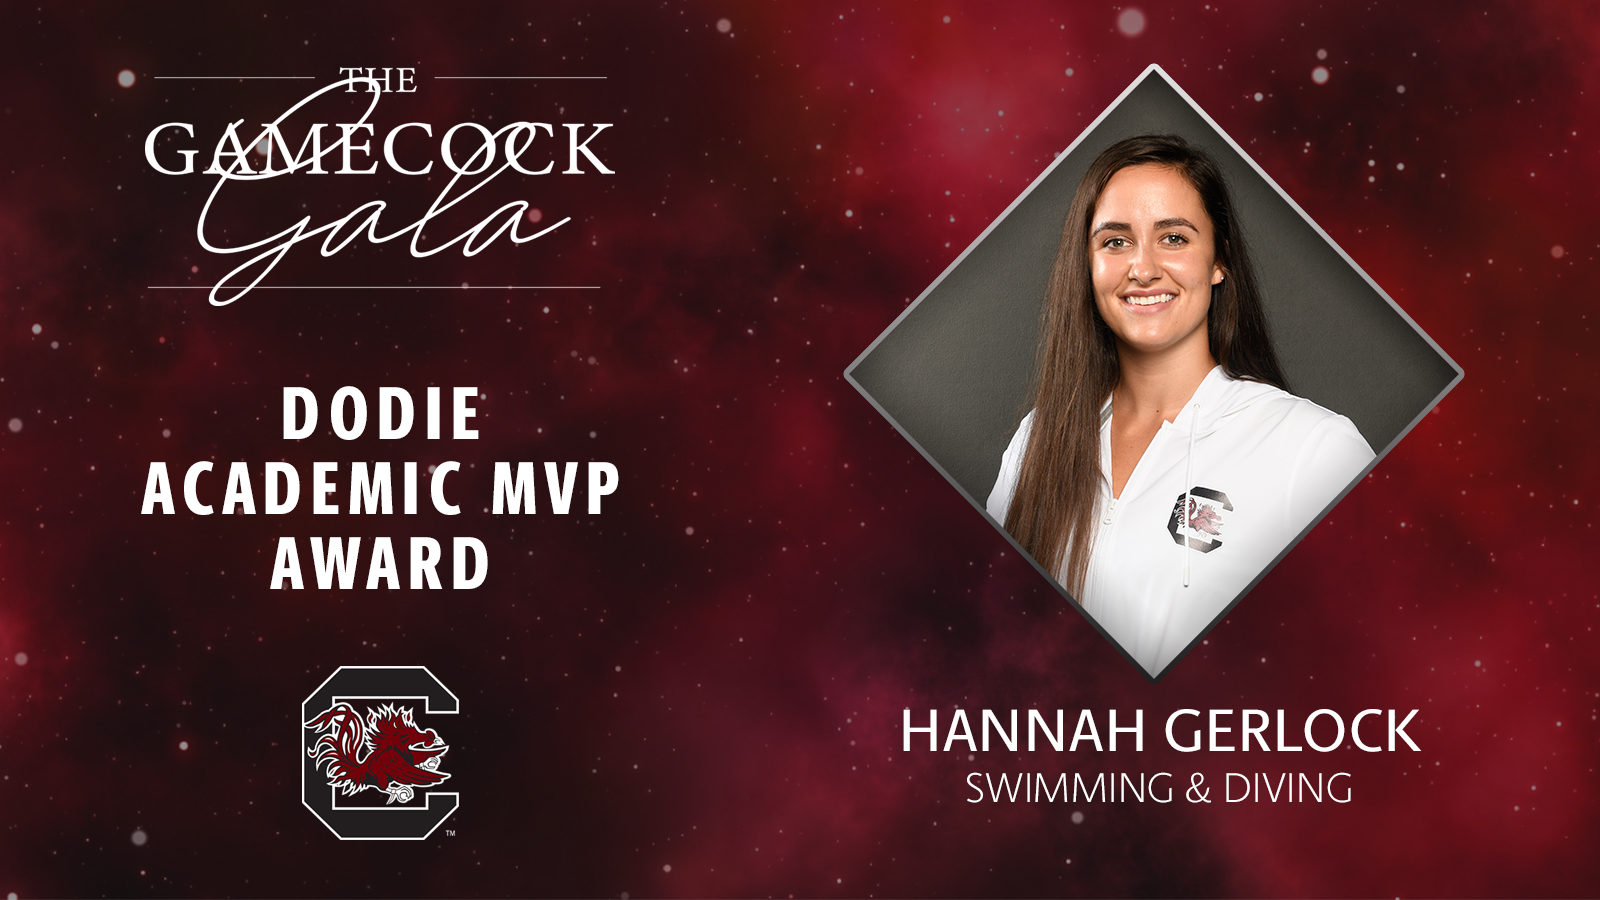 5/8/20 - Dodie Female Academic MVP Hannah Gerlock